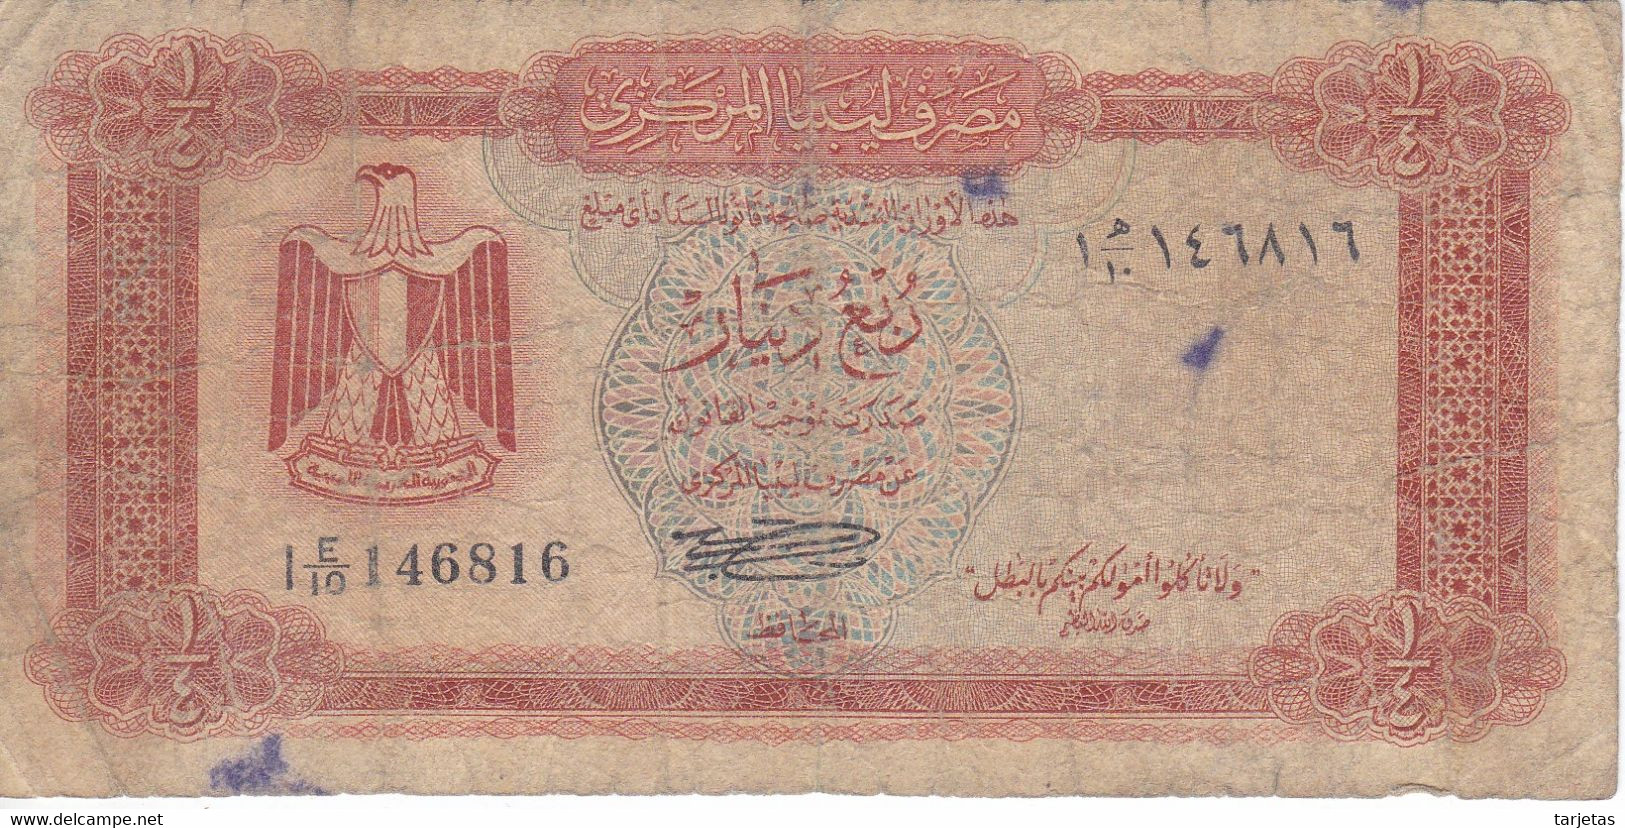 BILLETE DE LIBIA DE 1/4 DINAR DEL AÑO 1972 (BANKNOTE) - Libya